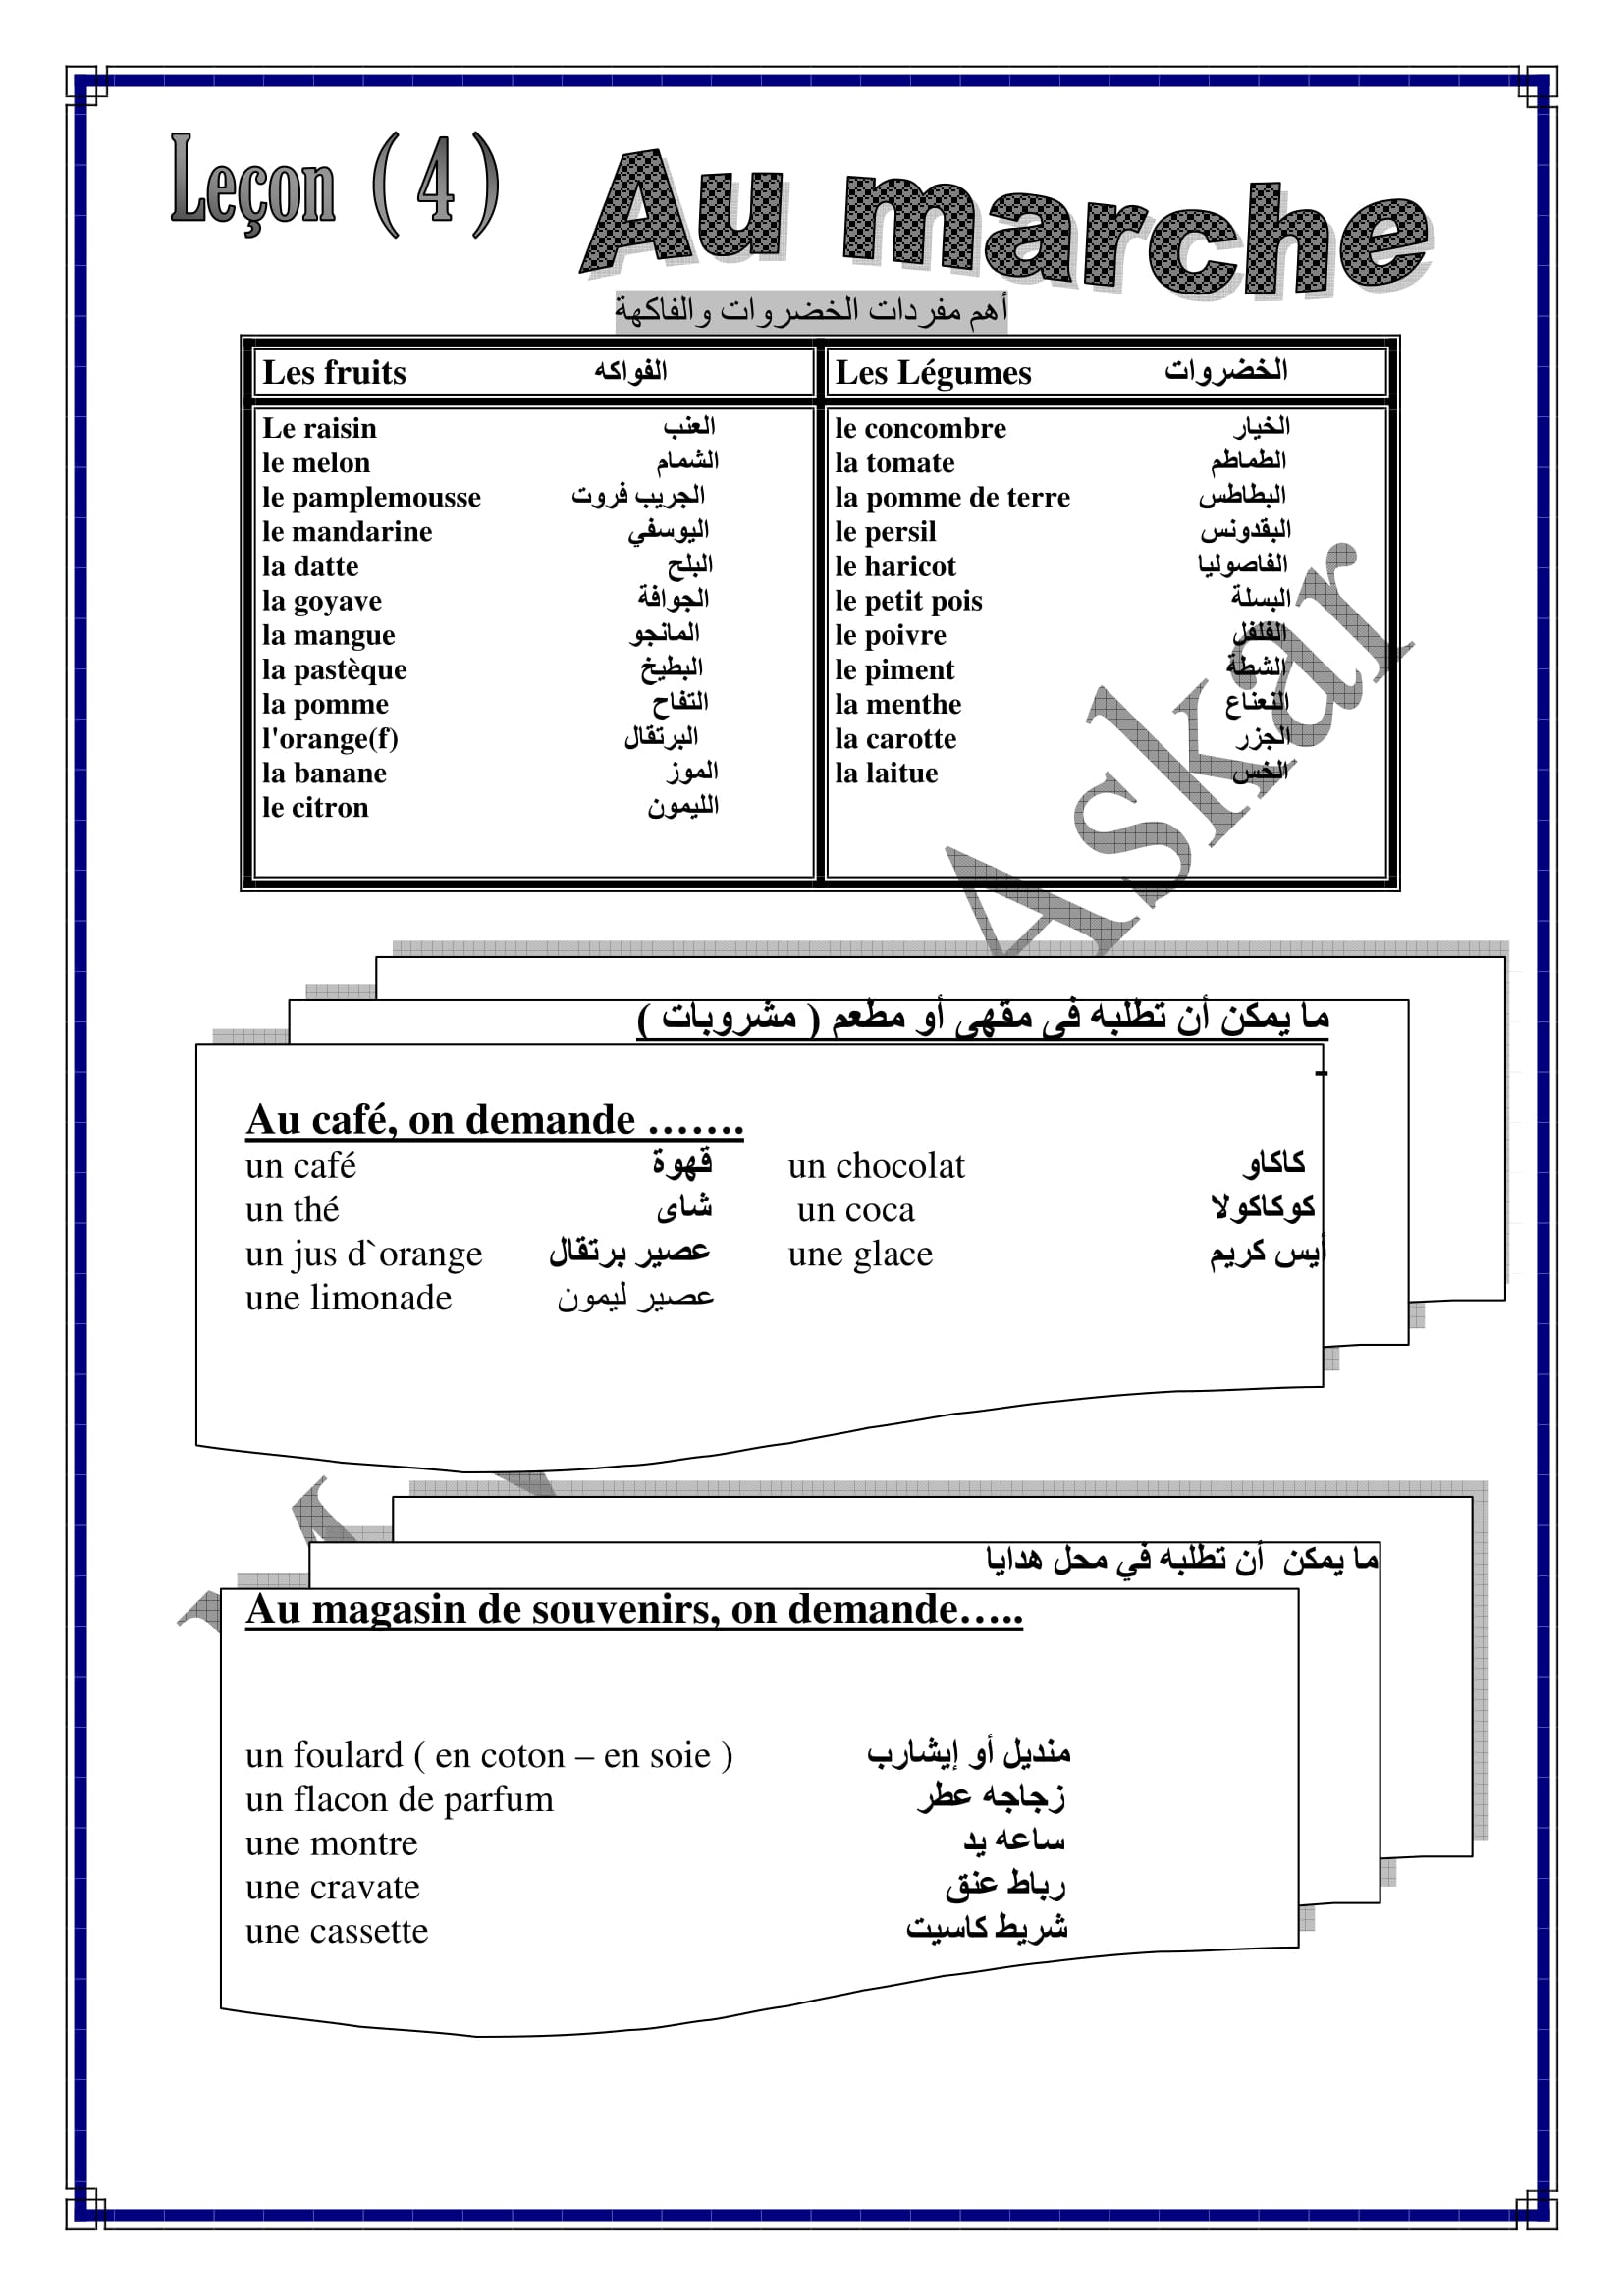 شرح الوحدة الرابعة من منهج bienvenue فى اللغة الفرنسية للصف الاول الاعدادى اللغات الترم الاول